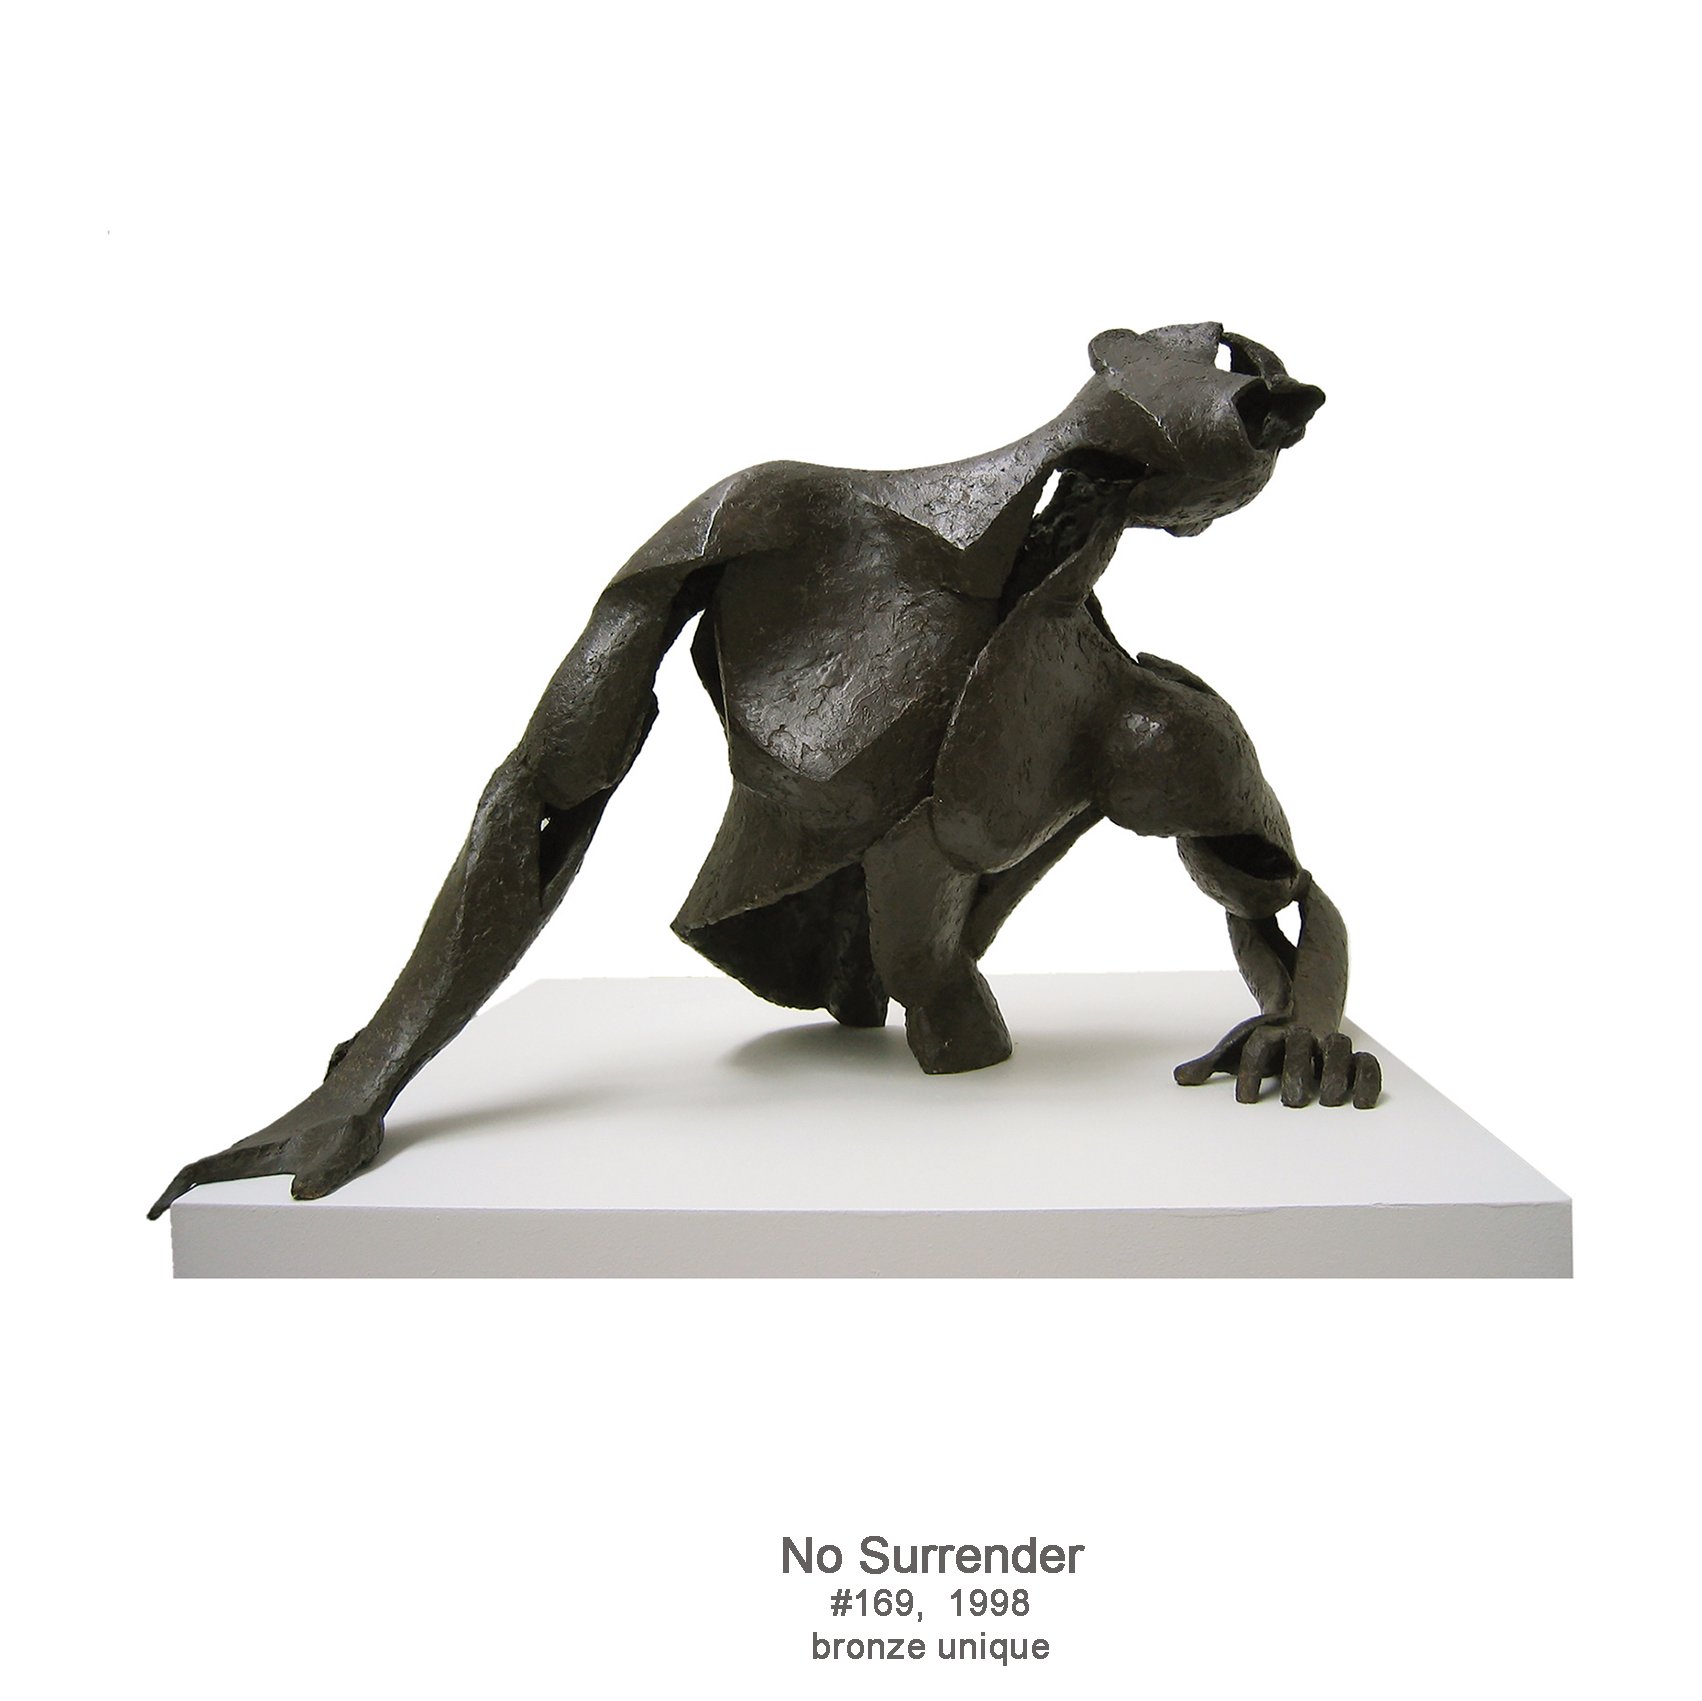 No Surrender, 1998, bronze, #169